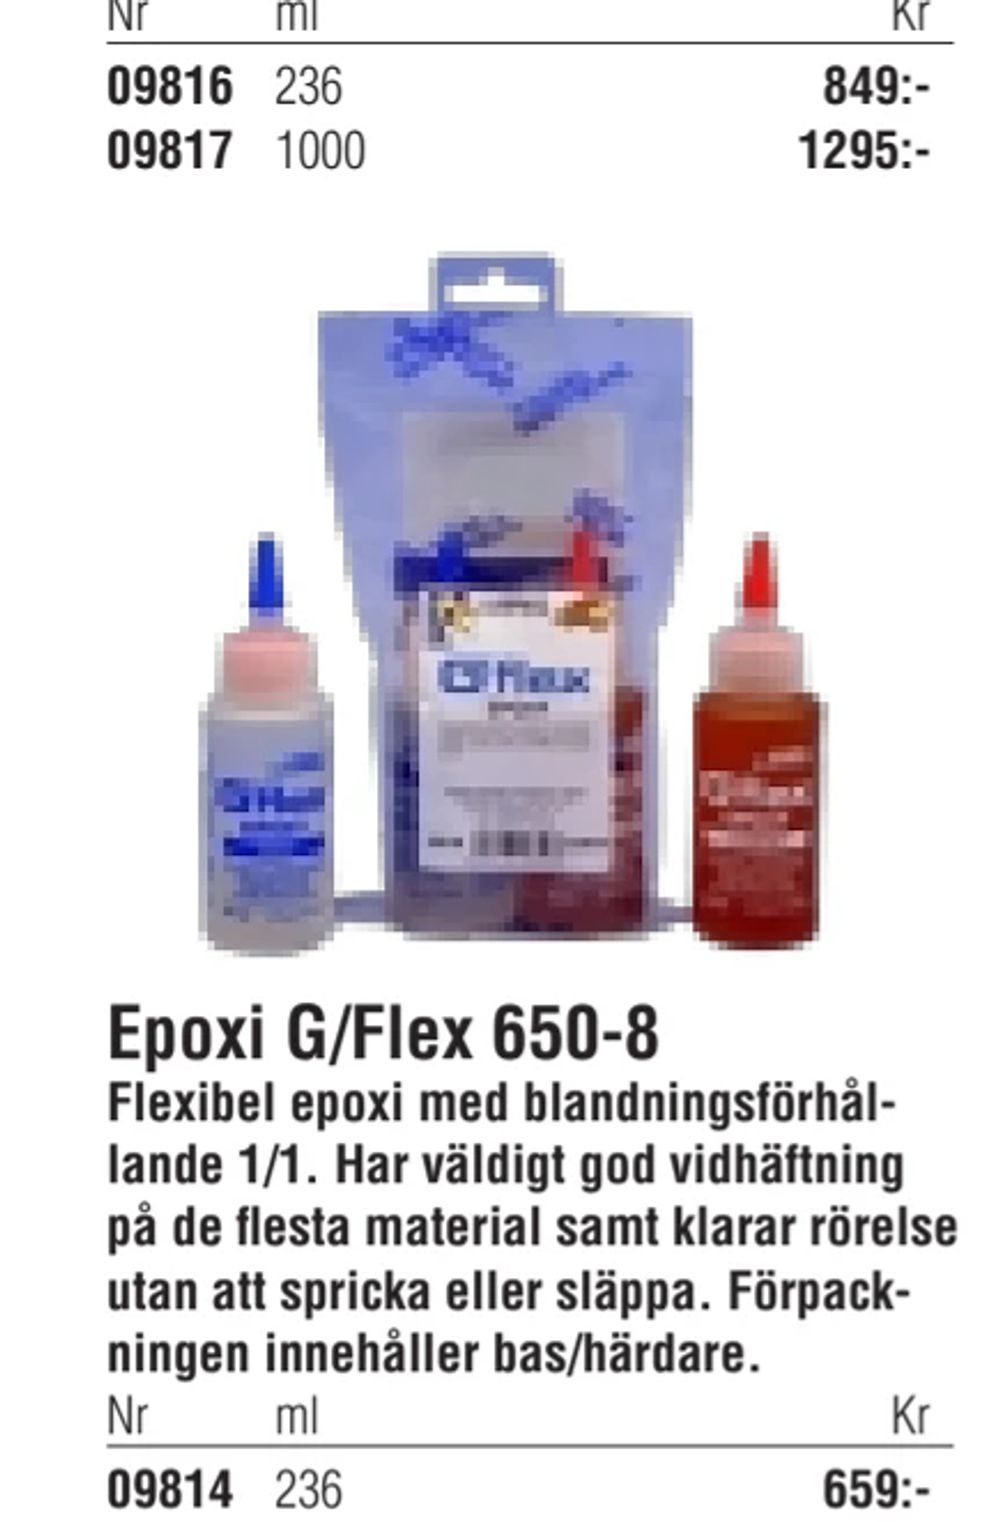 Erbjudanden på Epoxi G/Flex 650-8 från Erlandsons Brygga för 659 kr